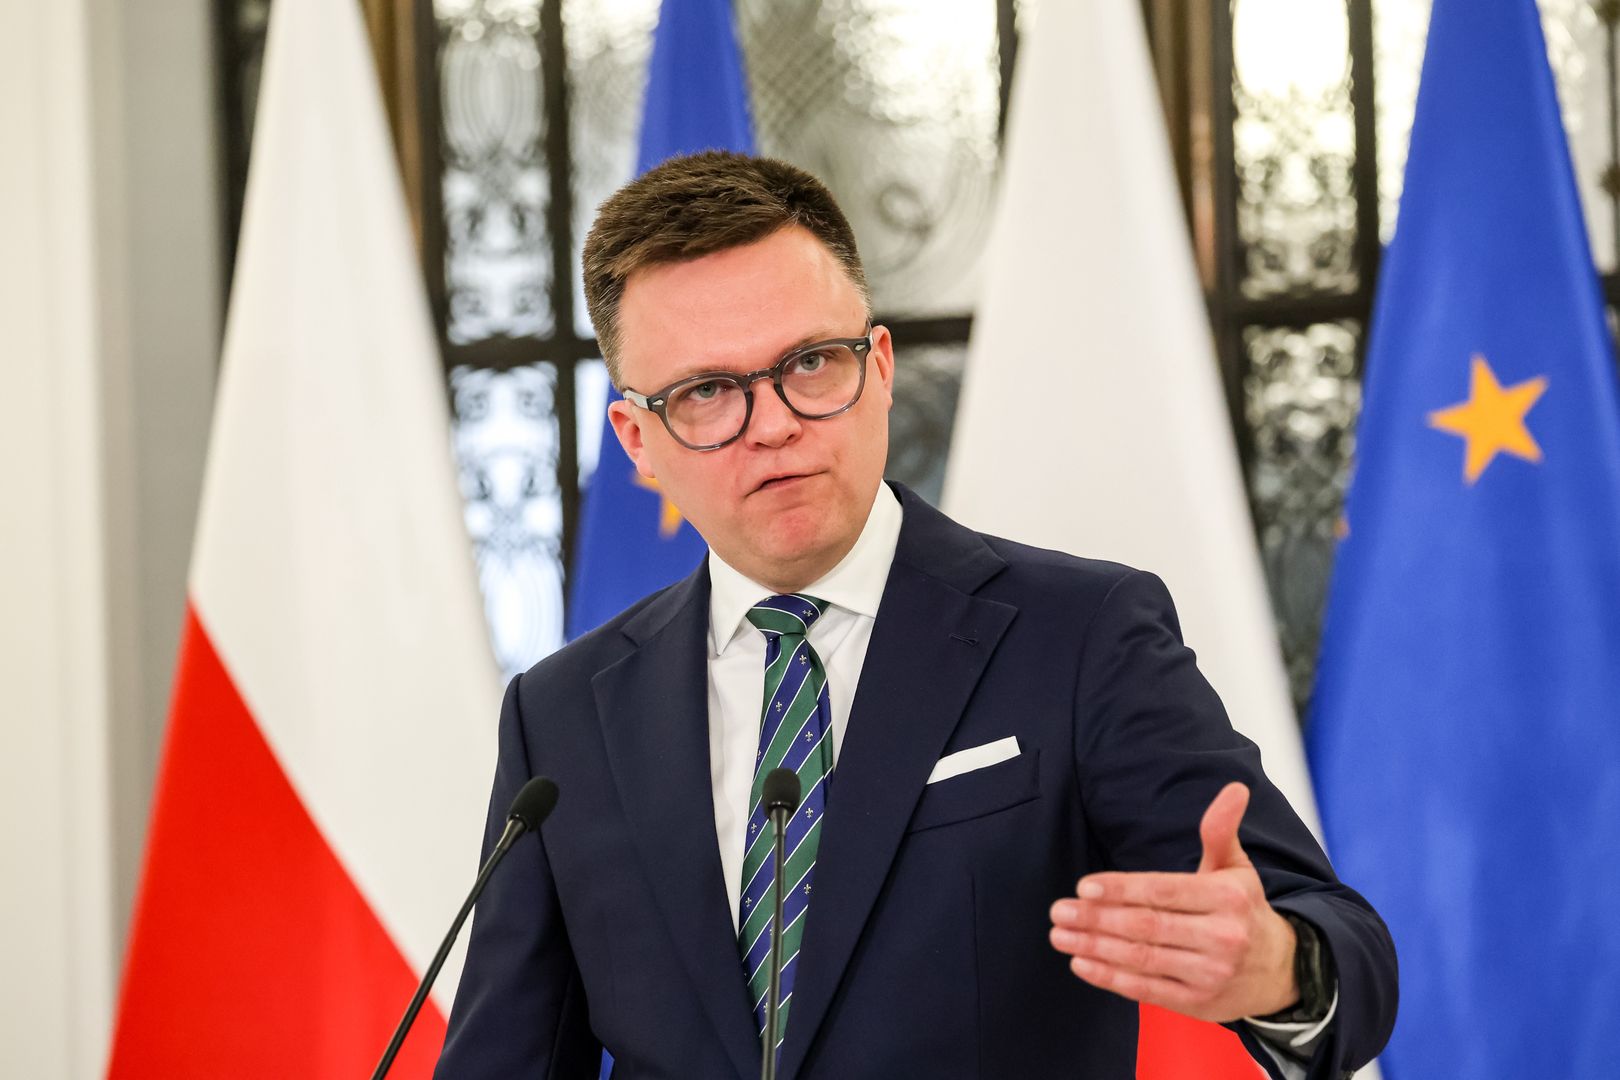 Ozdoba uderza w Szymona Hołownię. "Parlament stał się cyrkiem"